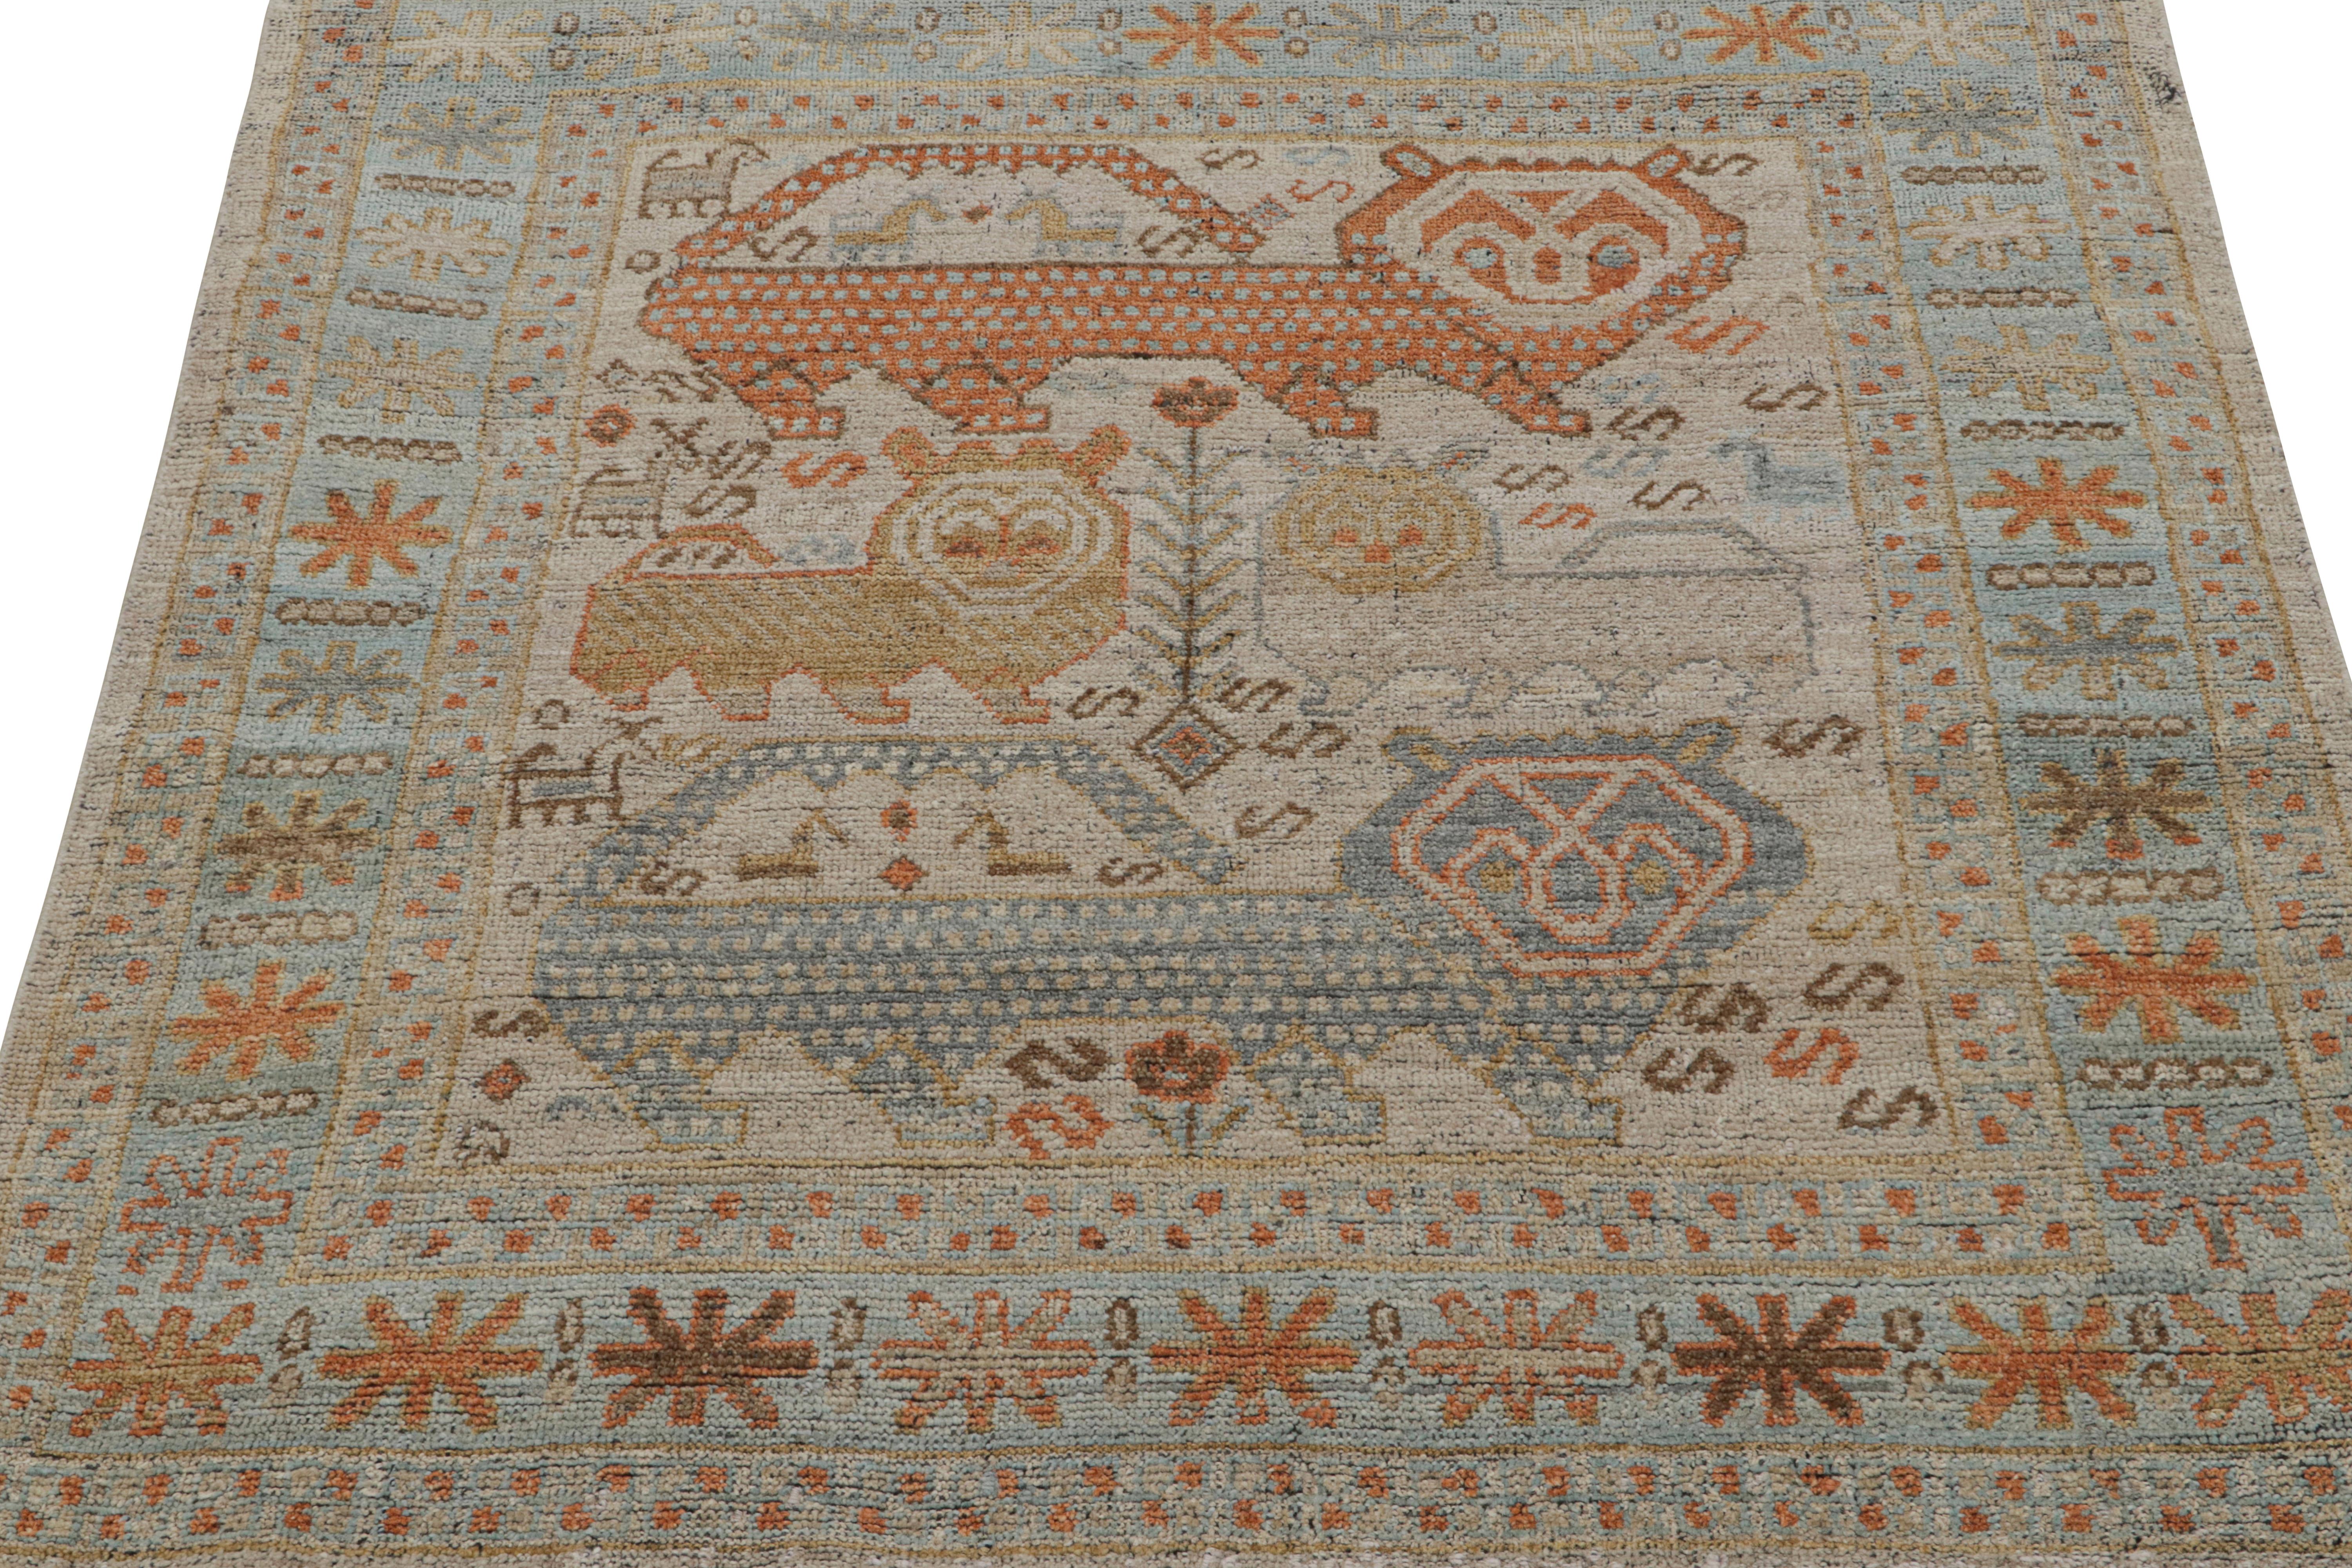 Indien Rug & Kilim's Tribal Style Rug in Polychromatic Lion Pictorial Patterns (tapis de style tribal aux motifs polychromes de lions) en vente